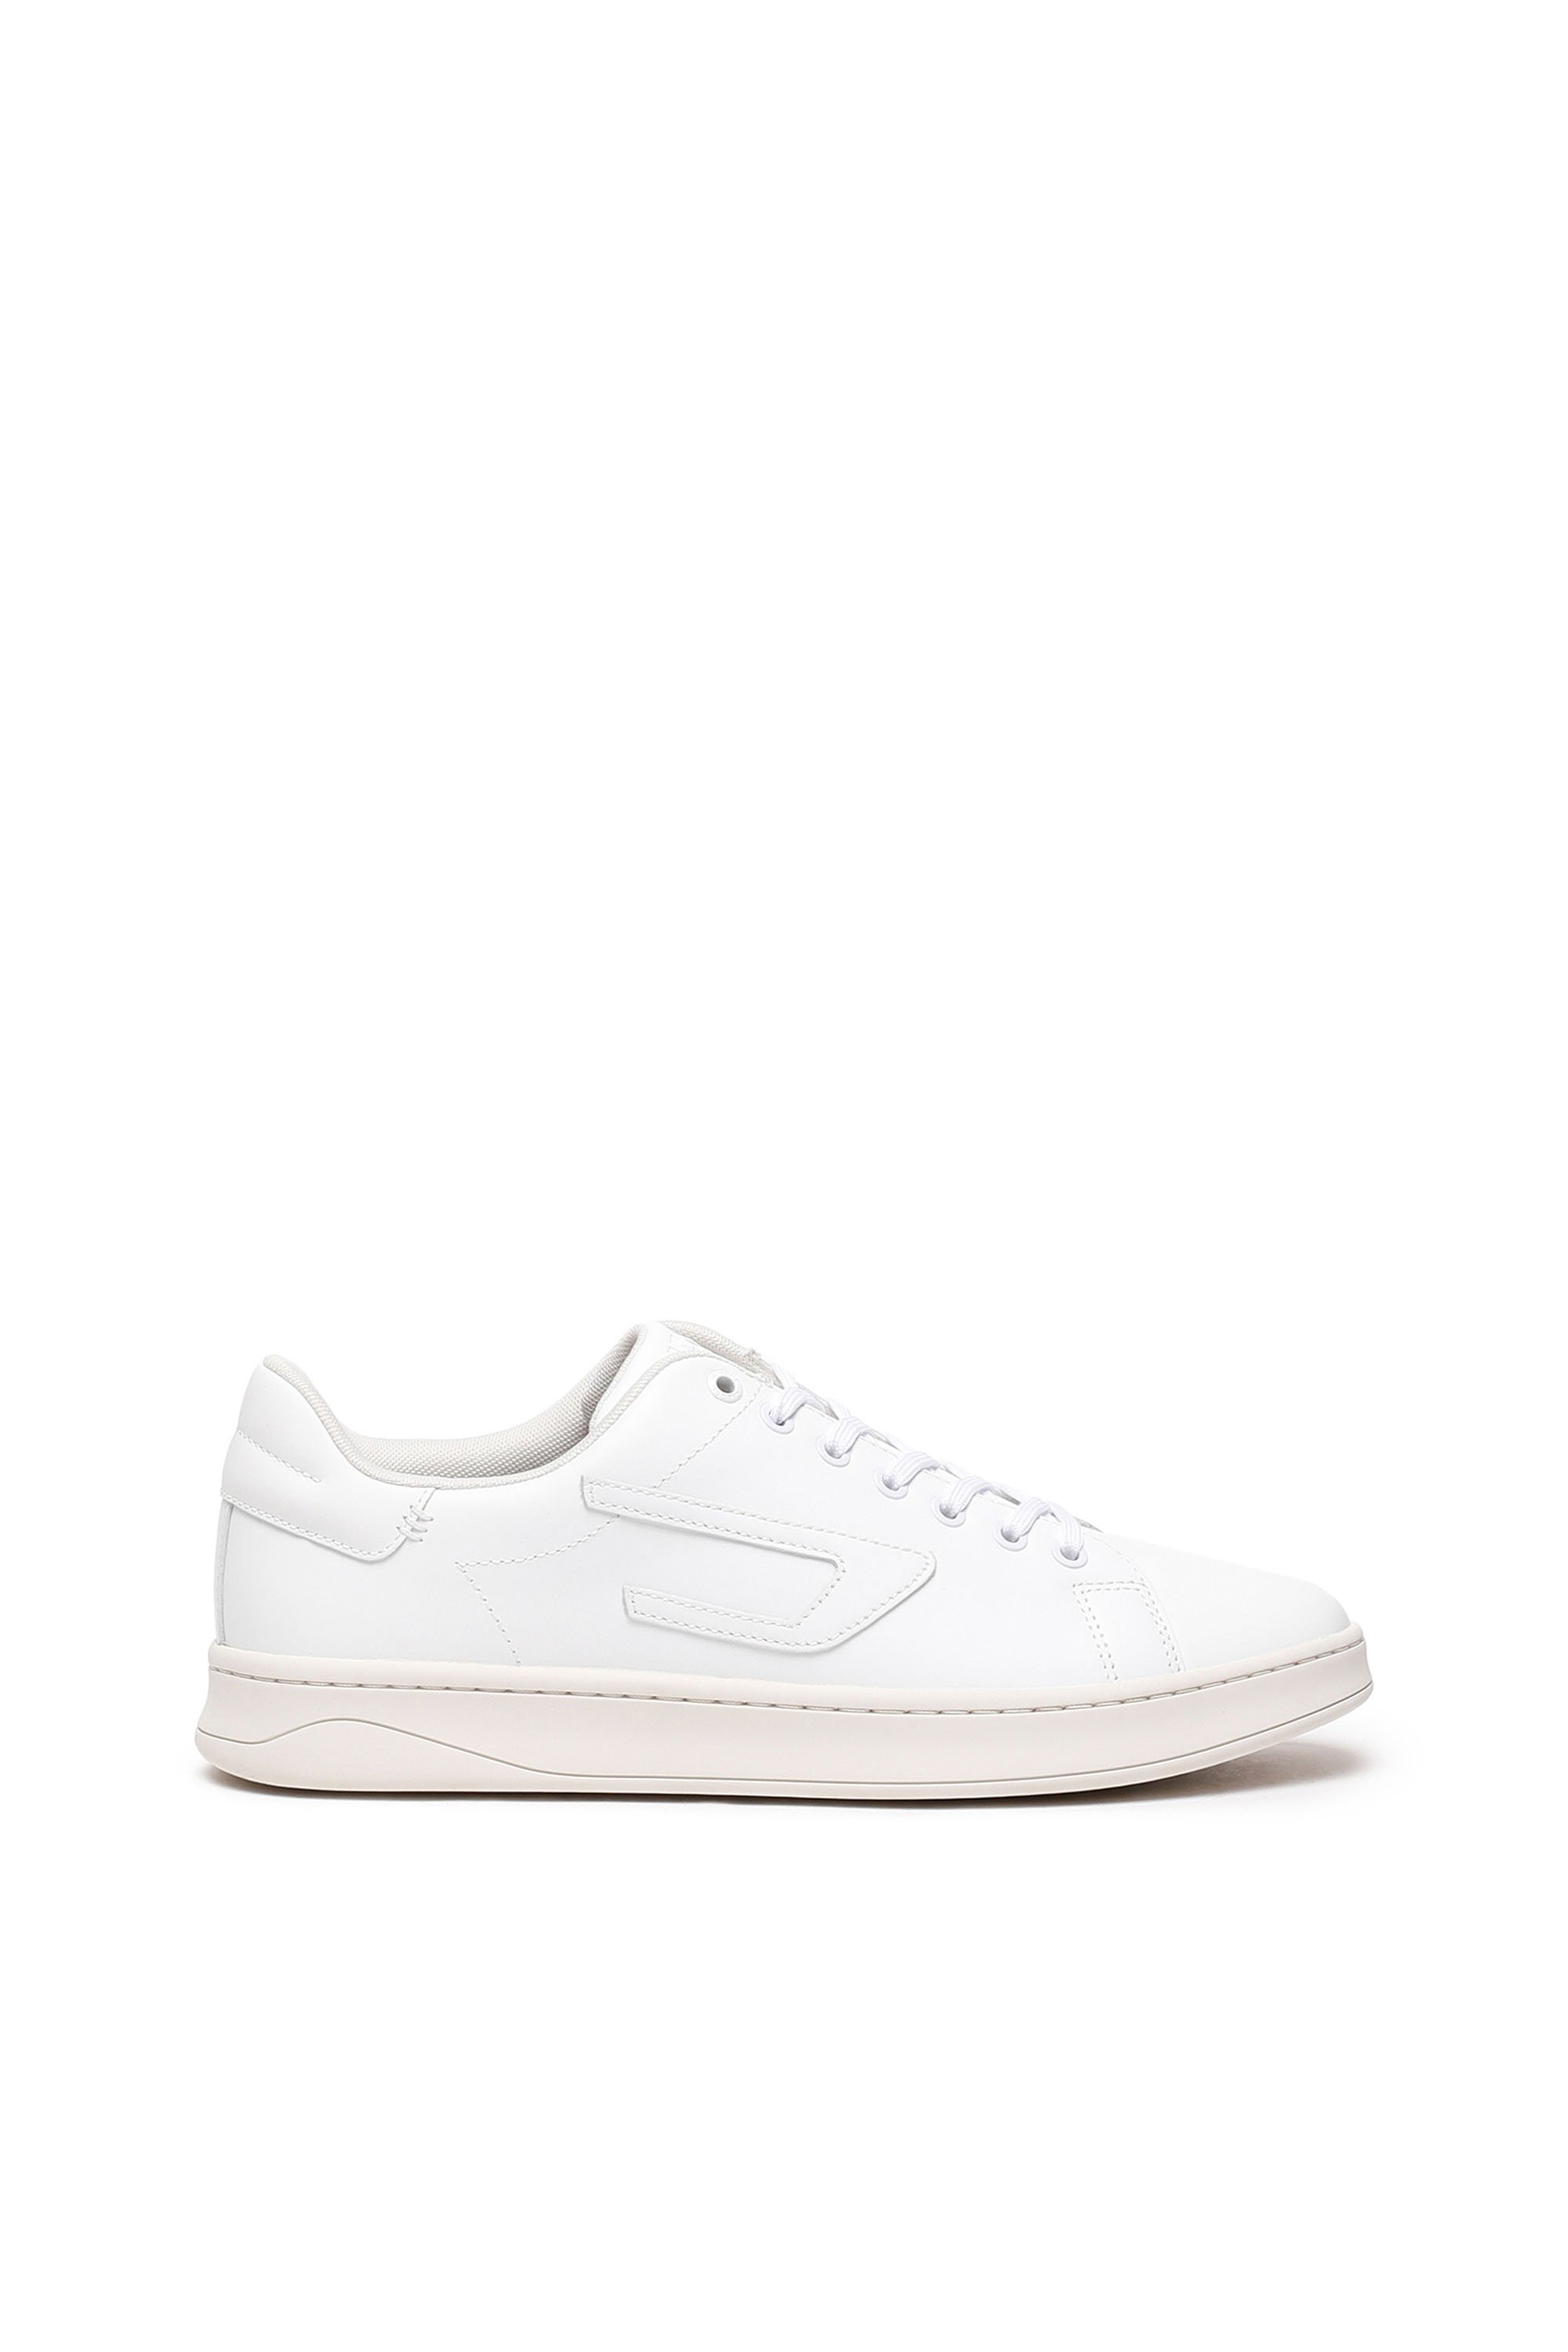 Shop Diesel S-athene Low-sneaker Basse In Pelle Con Patch D In White